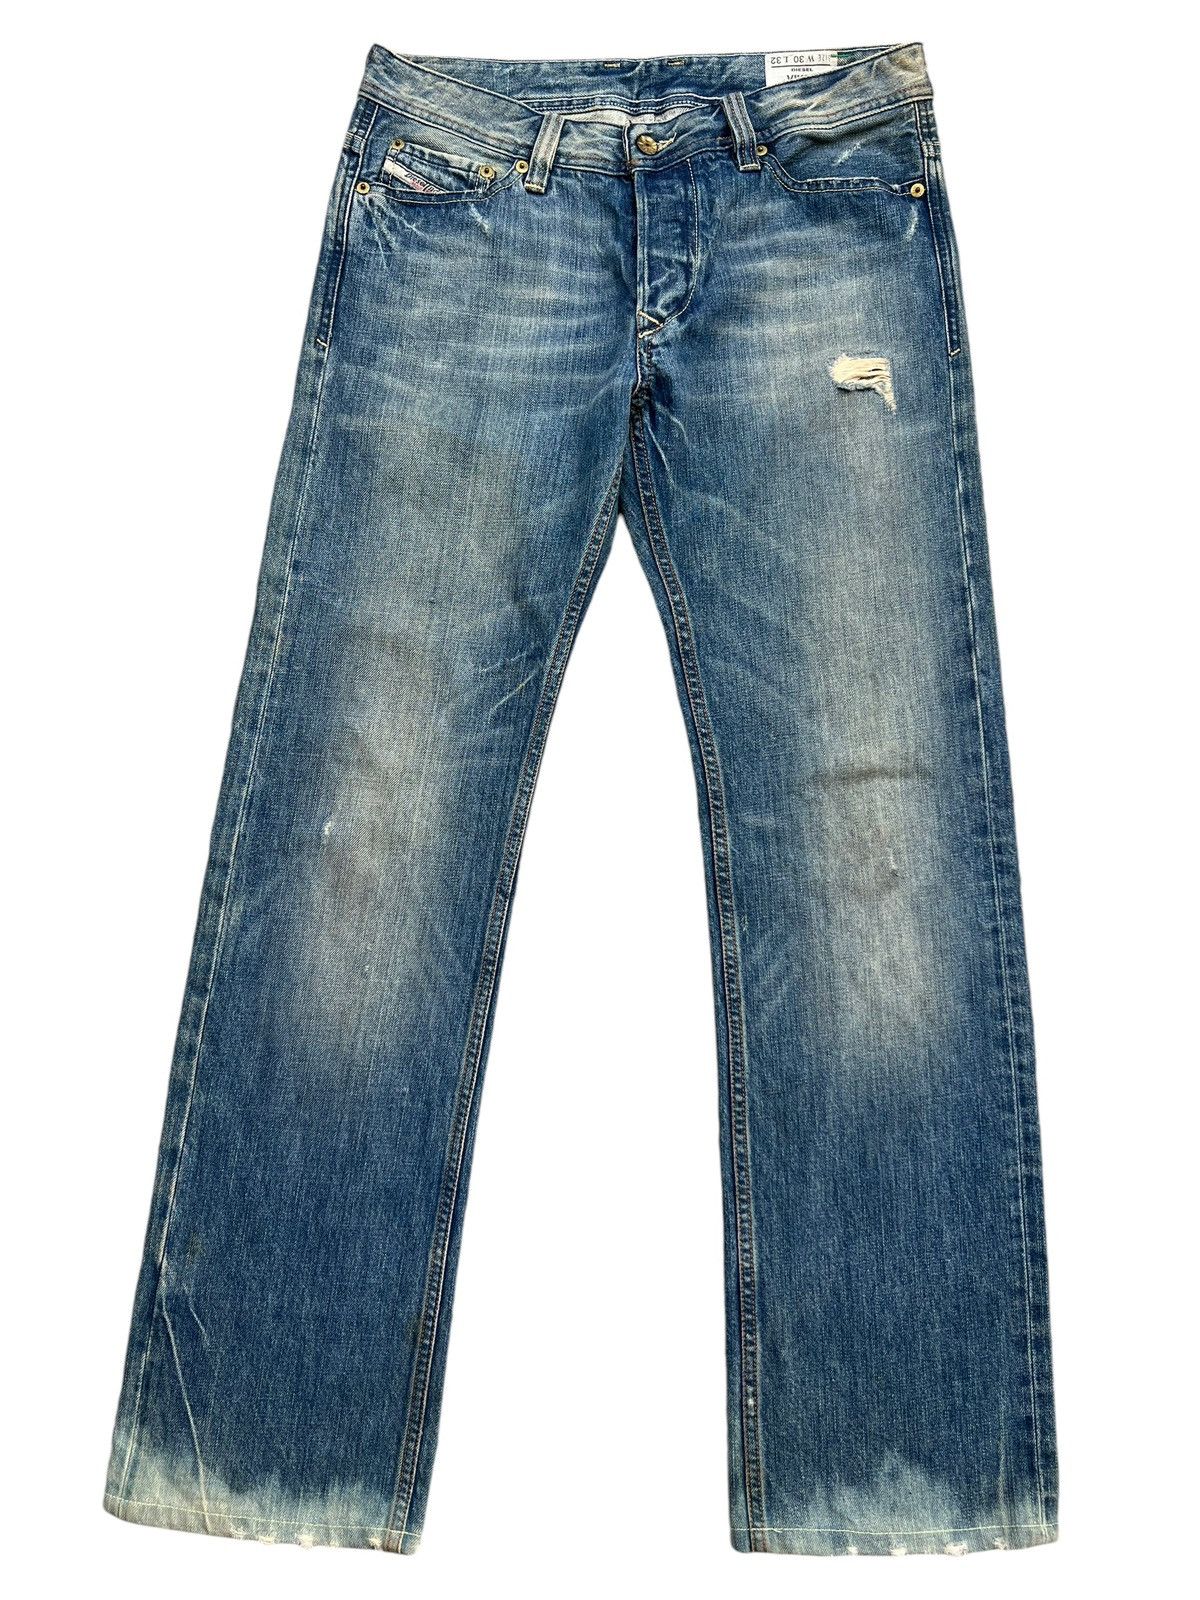 Diesel Mudwash Distressed Straightcut Denim Jeans 33x32 - 2